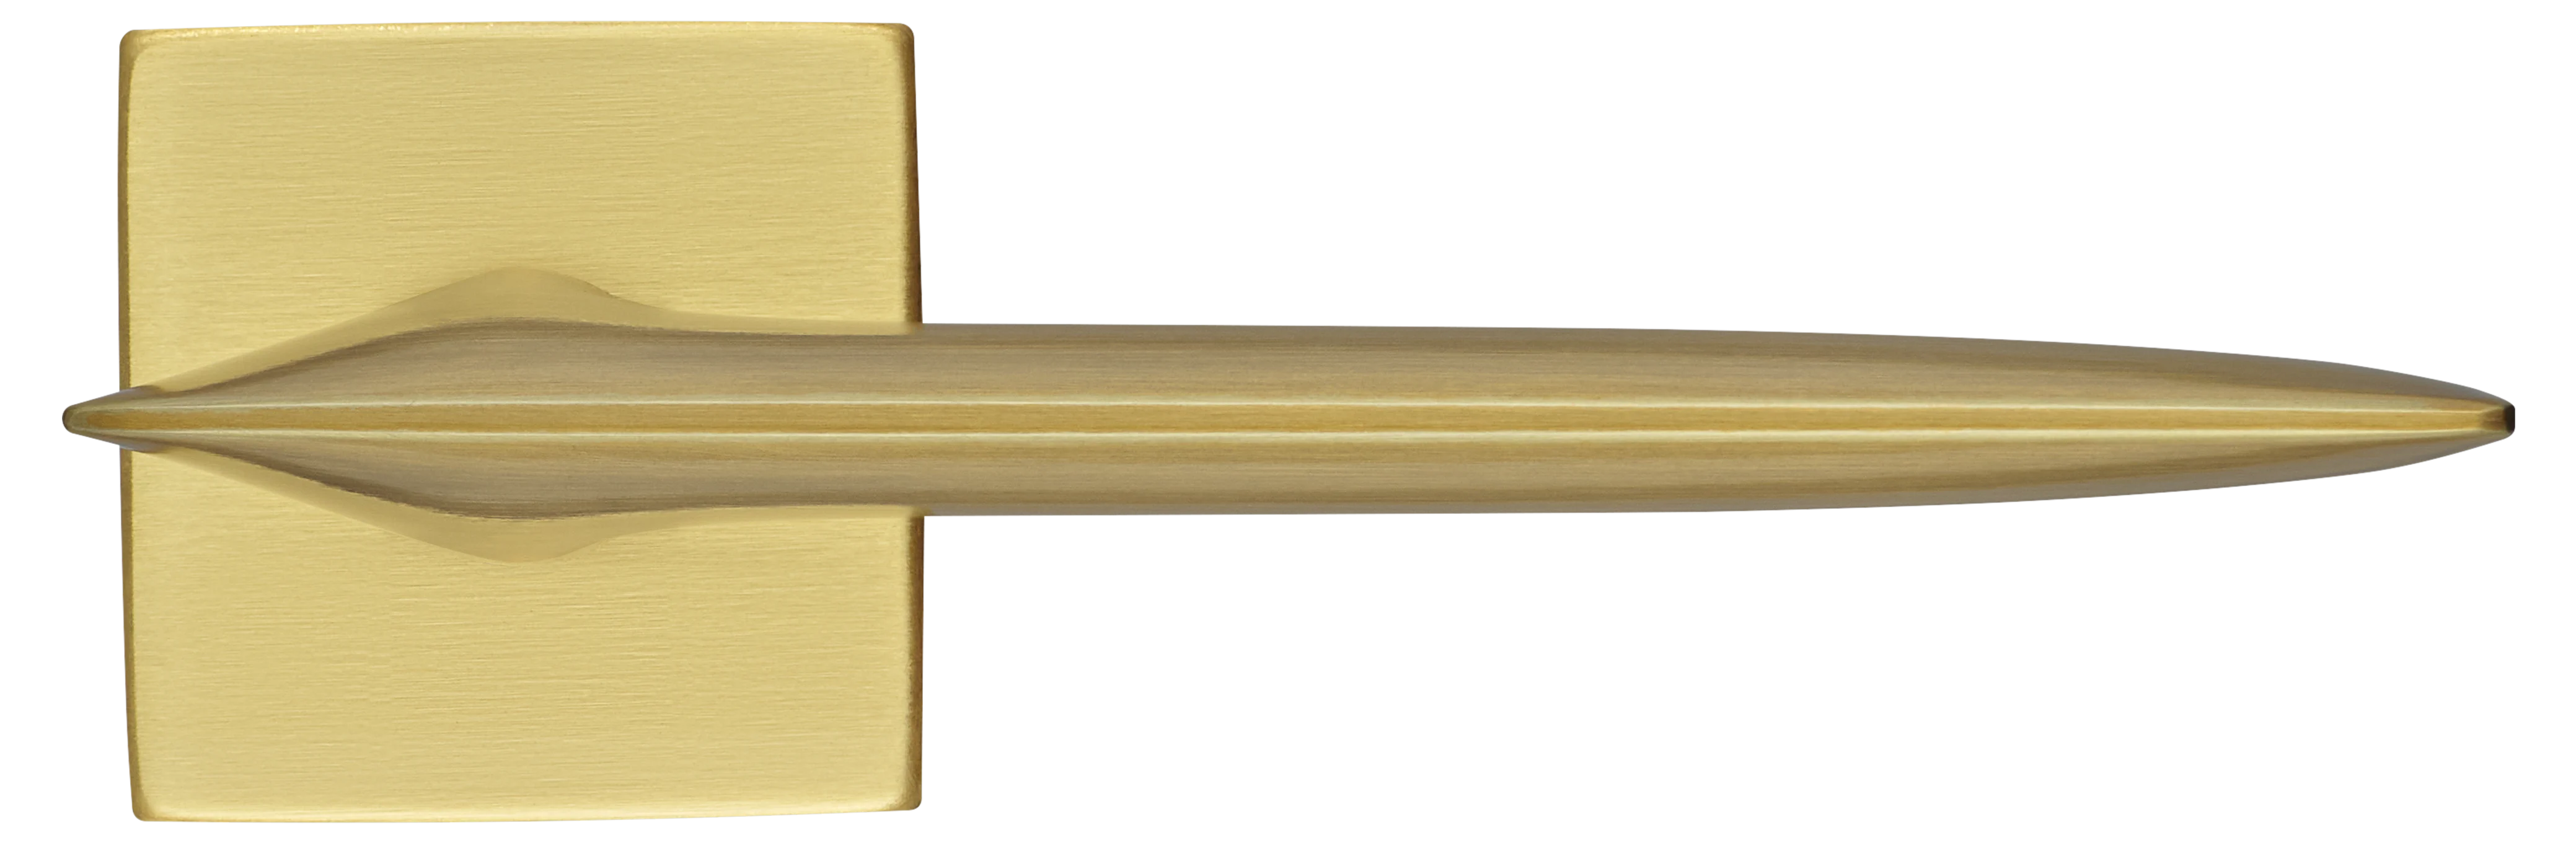 GALACTIC S5 OSA, ручка дверная, цвет -  матовое золото фото купить в Краснодаре